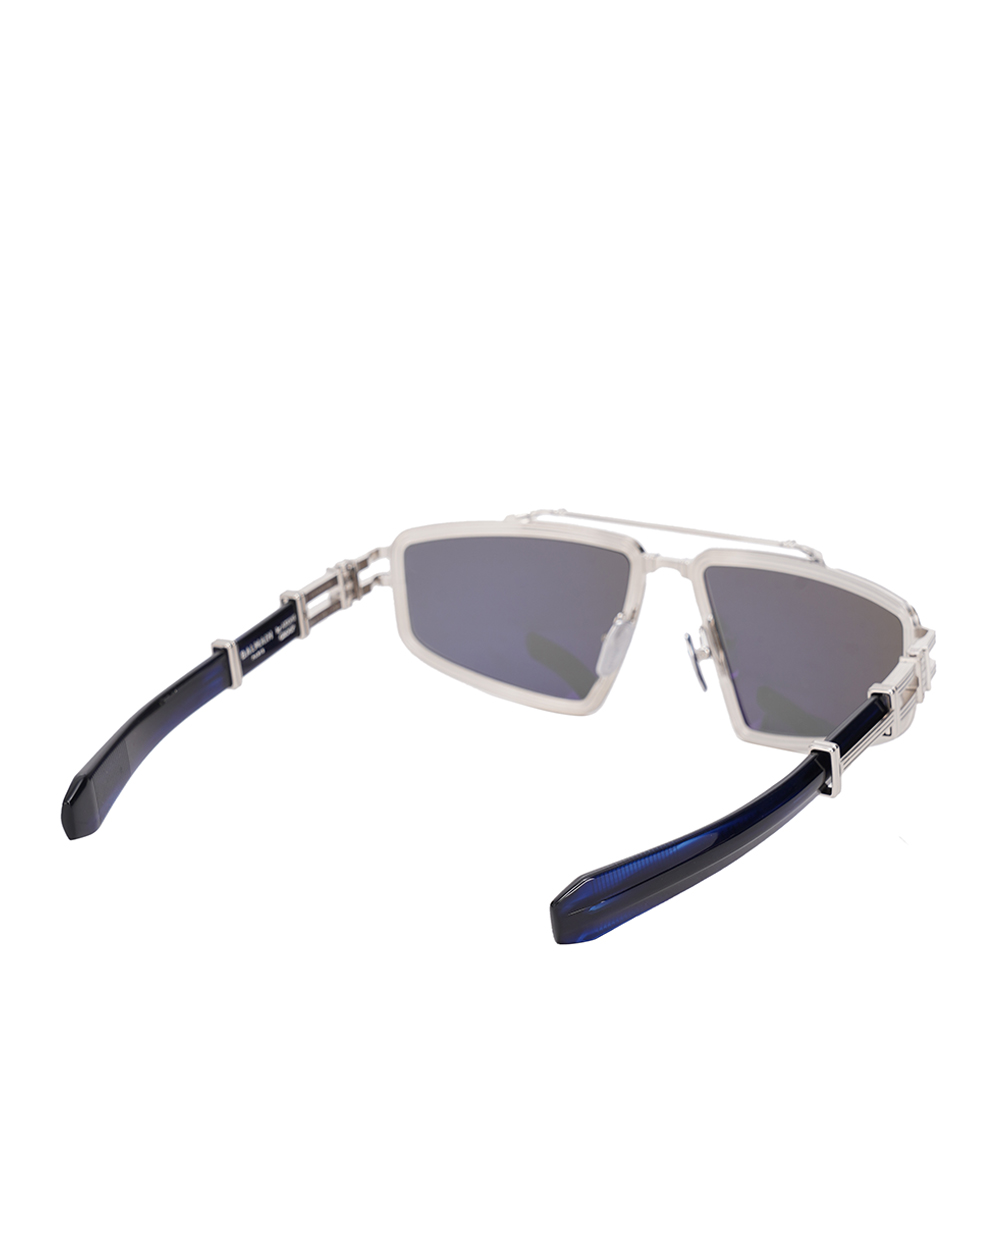 Солнцезащитные очки Titan Balmain BPS-139C-59, синий цвет • Купить в интернет-магазине Kameron